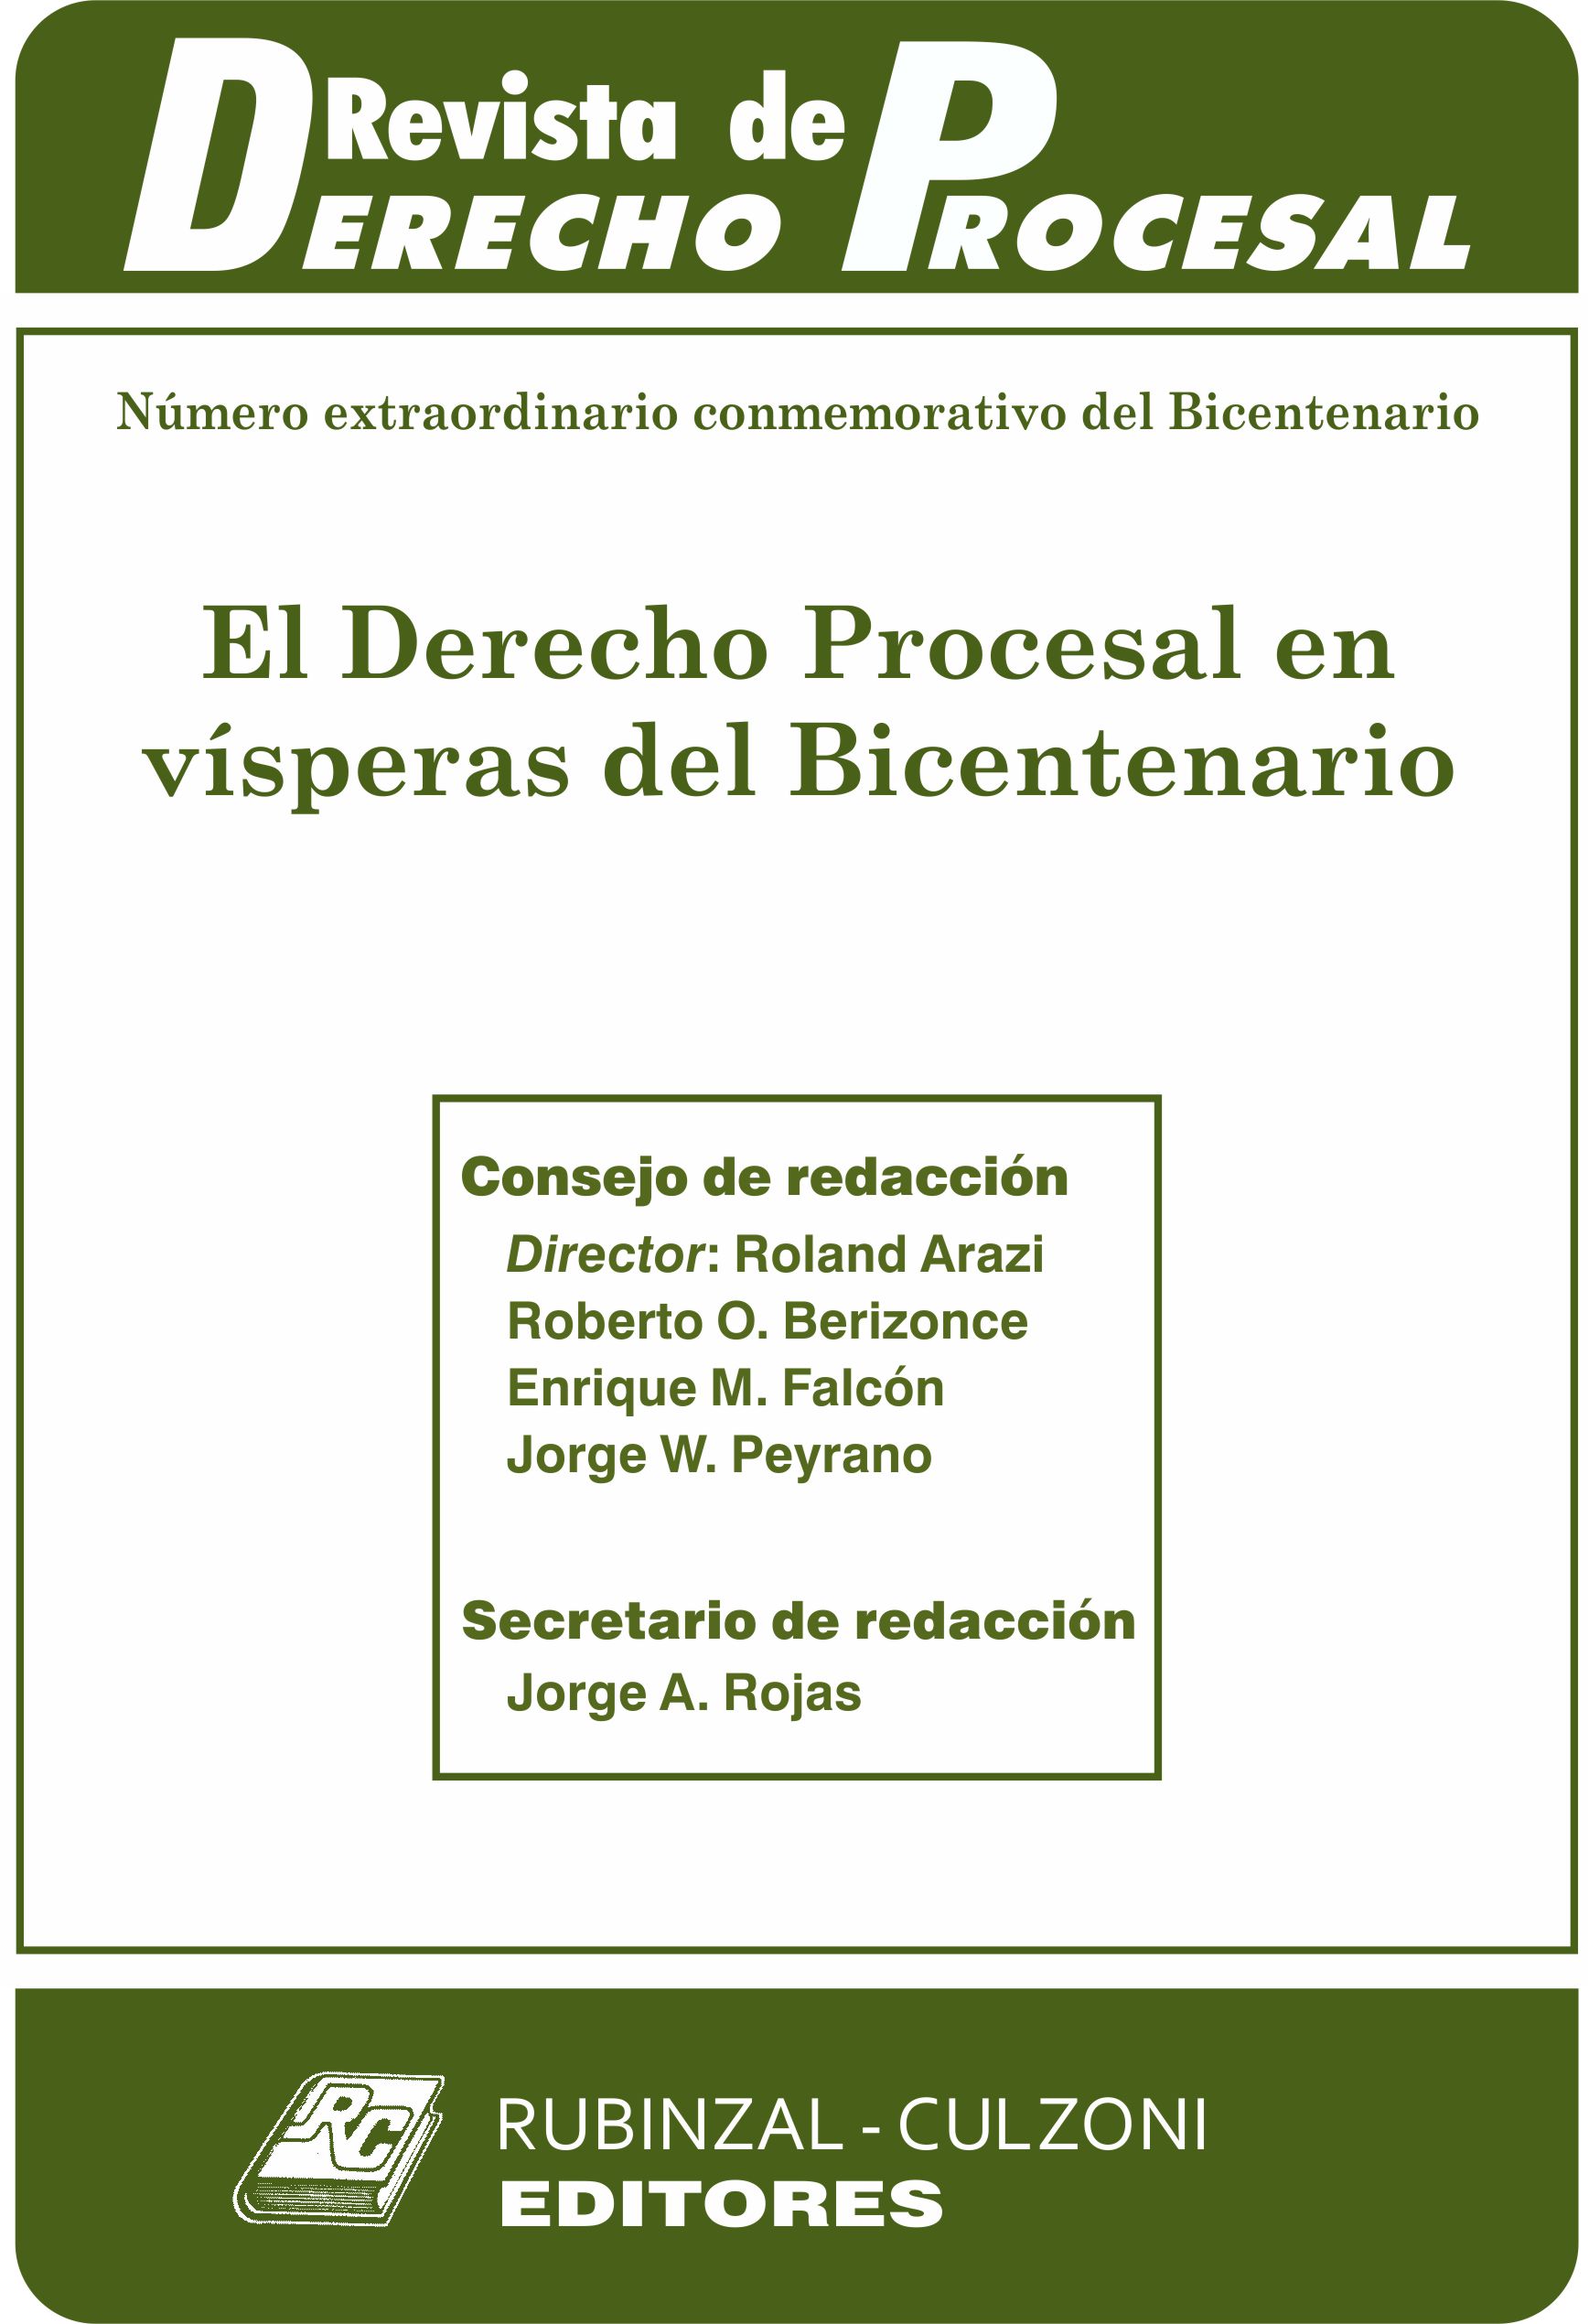 Revista de Derecho Procesal - Número extraordinario conmemorativo del Bicentenario